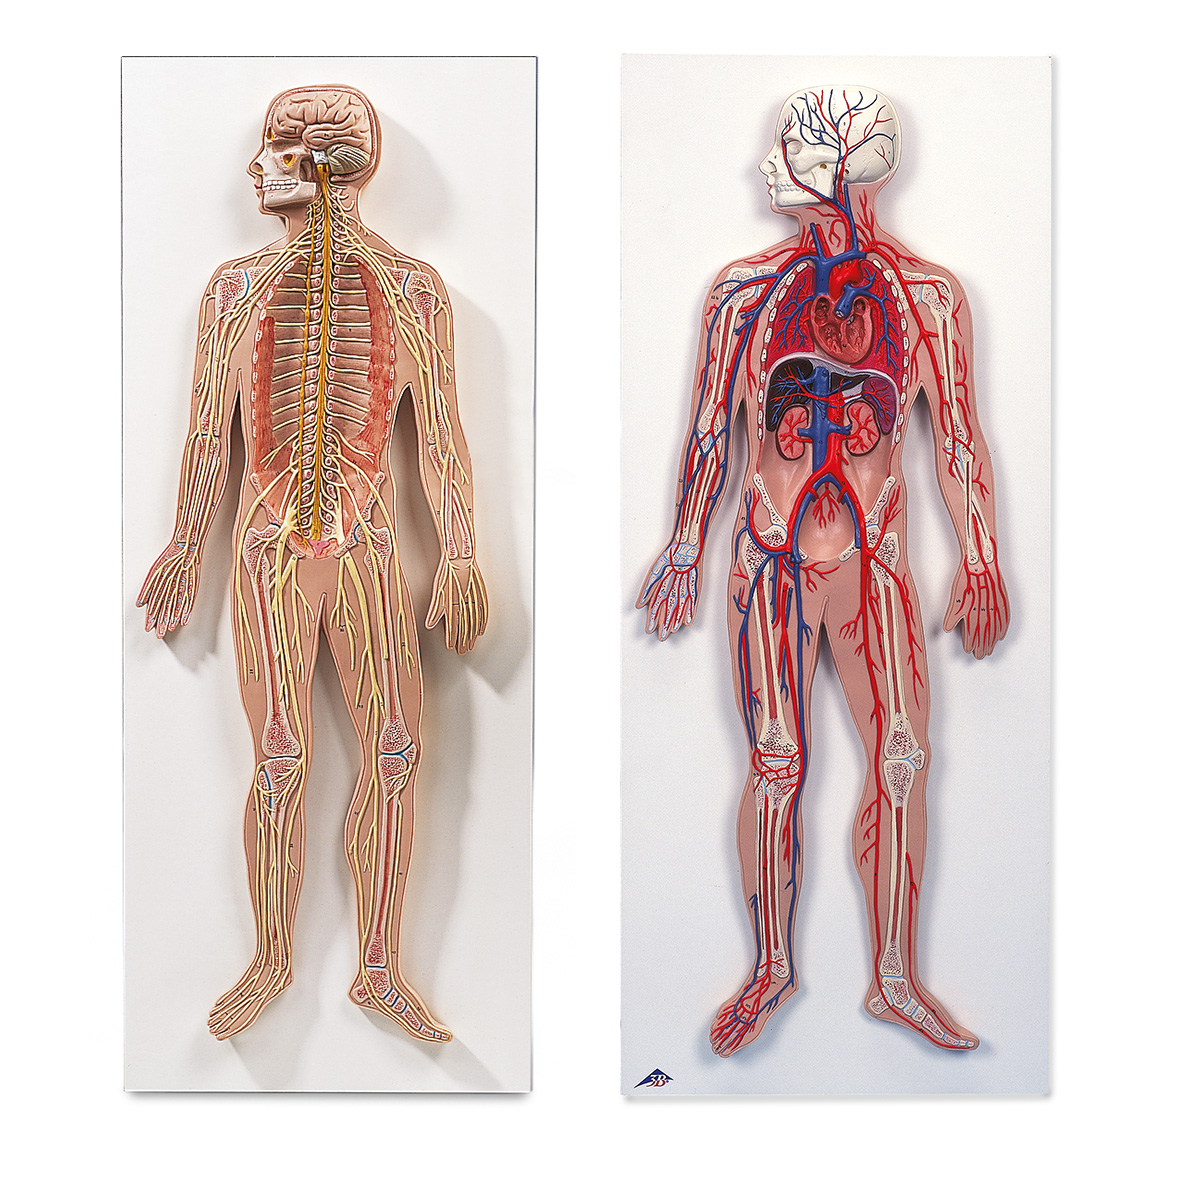 Grupos Anatómicos El sistema nervioso y el sistema circulatorio humano -  8001092 - 3010309 - Anatomía Grupos - 3B Scientific